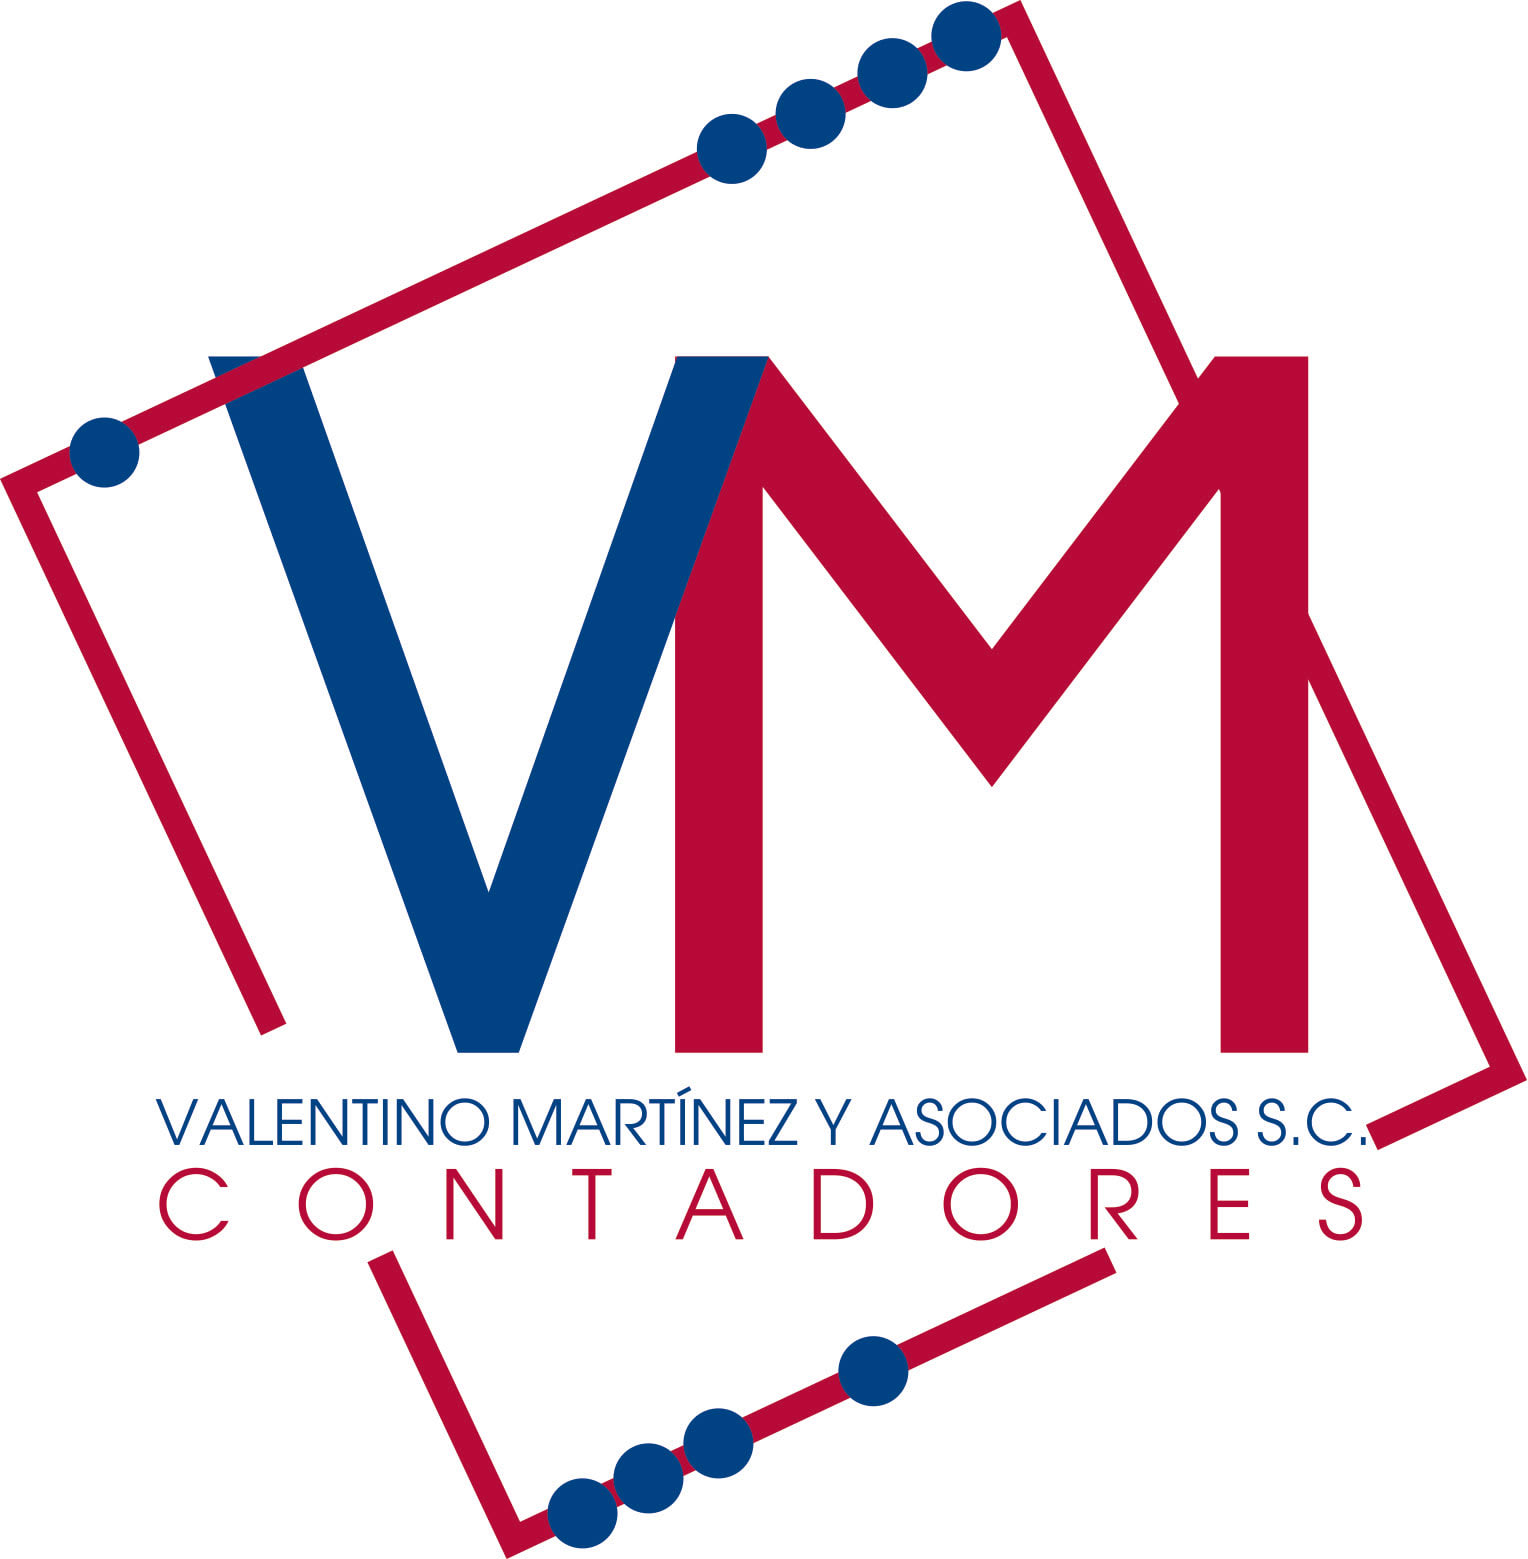 Consultores Valentino Martinez Y Asociados S.C